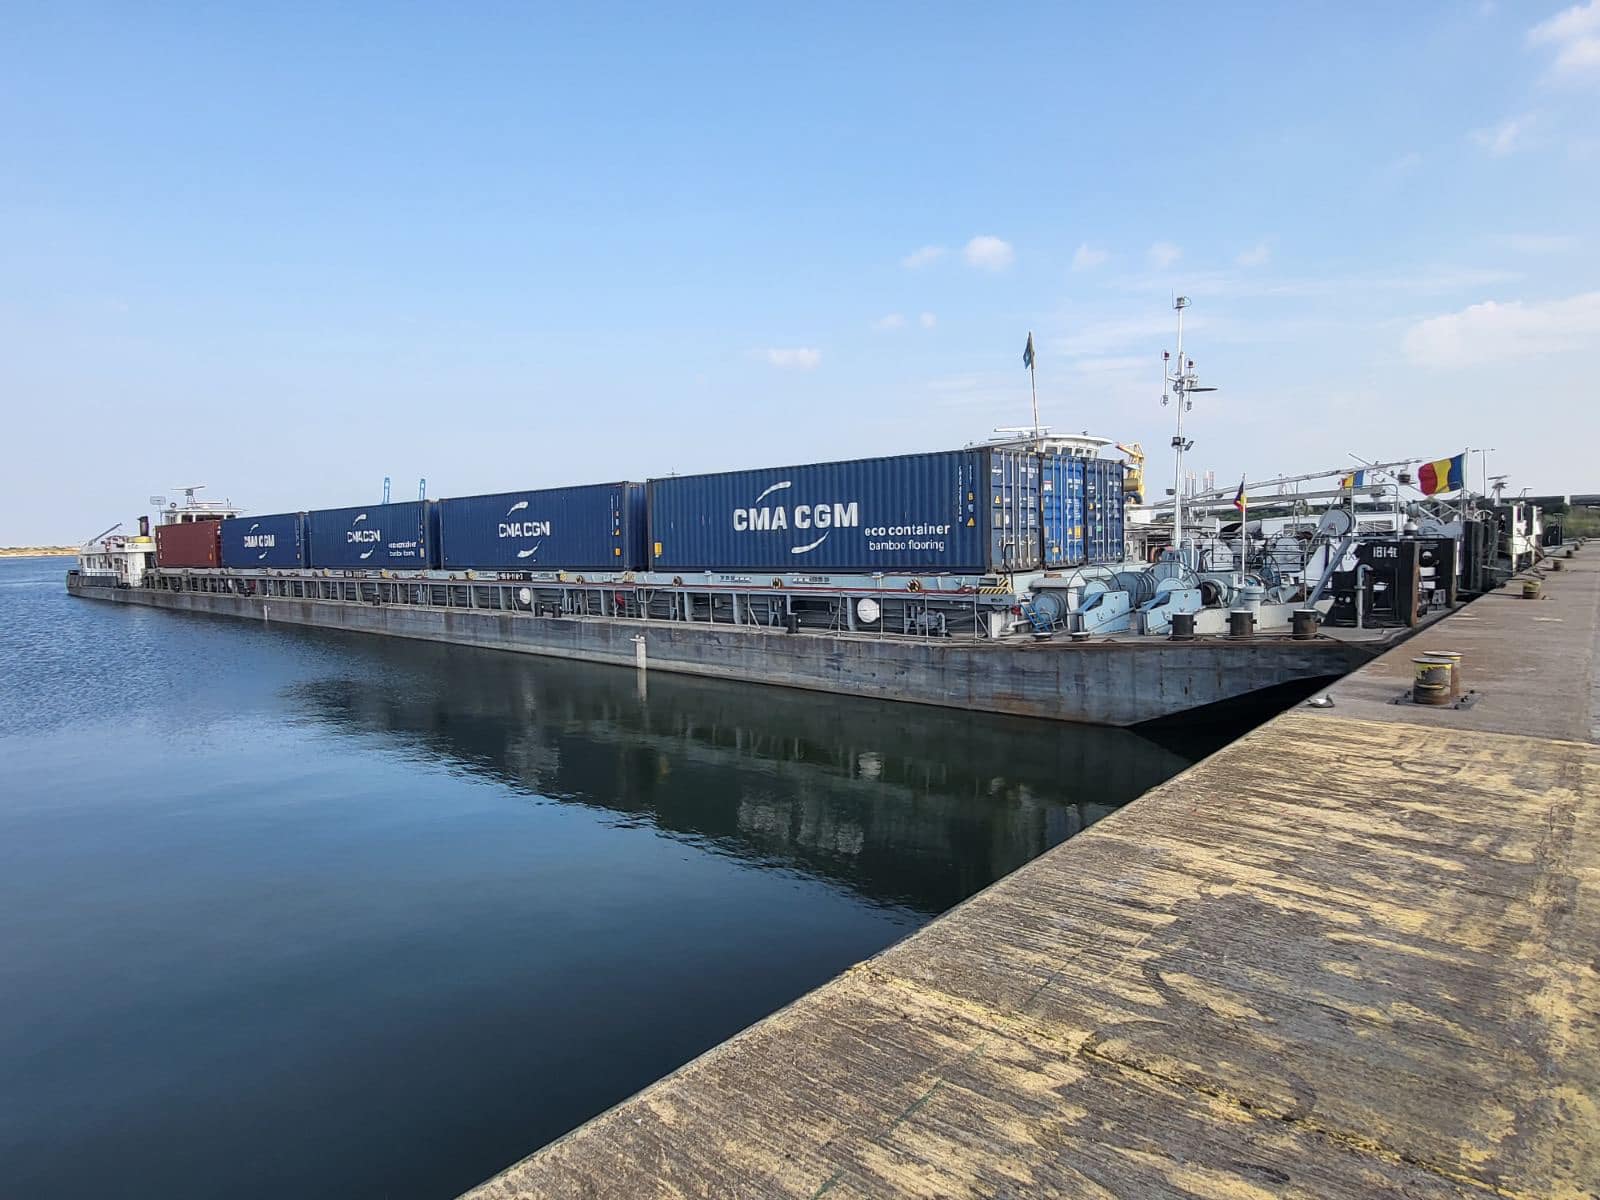 Обсяги контейнерних перевезень на Дунаї збільшуються. Каравани УДП здійснюють регулярний експорт та імпорт